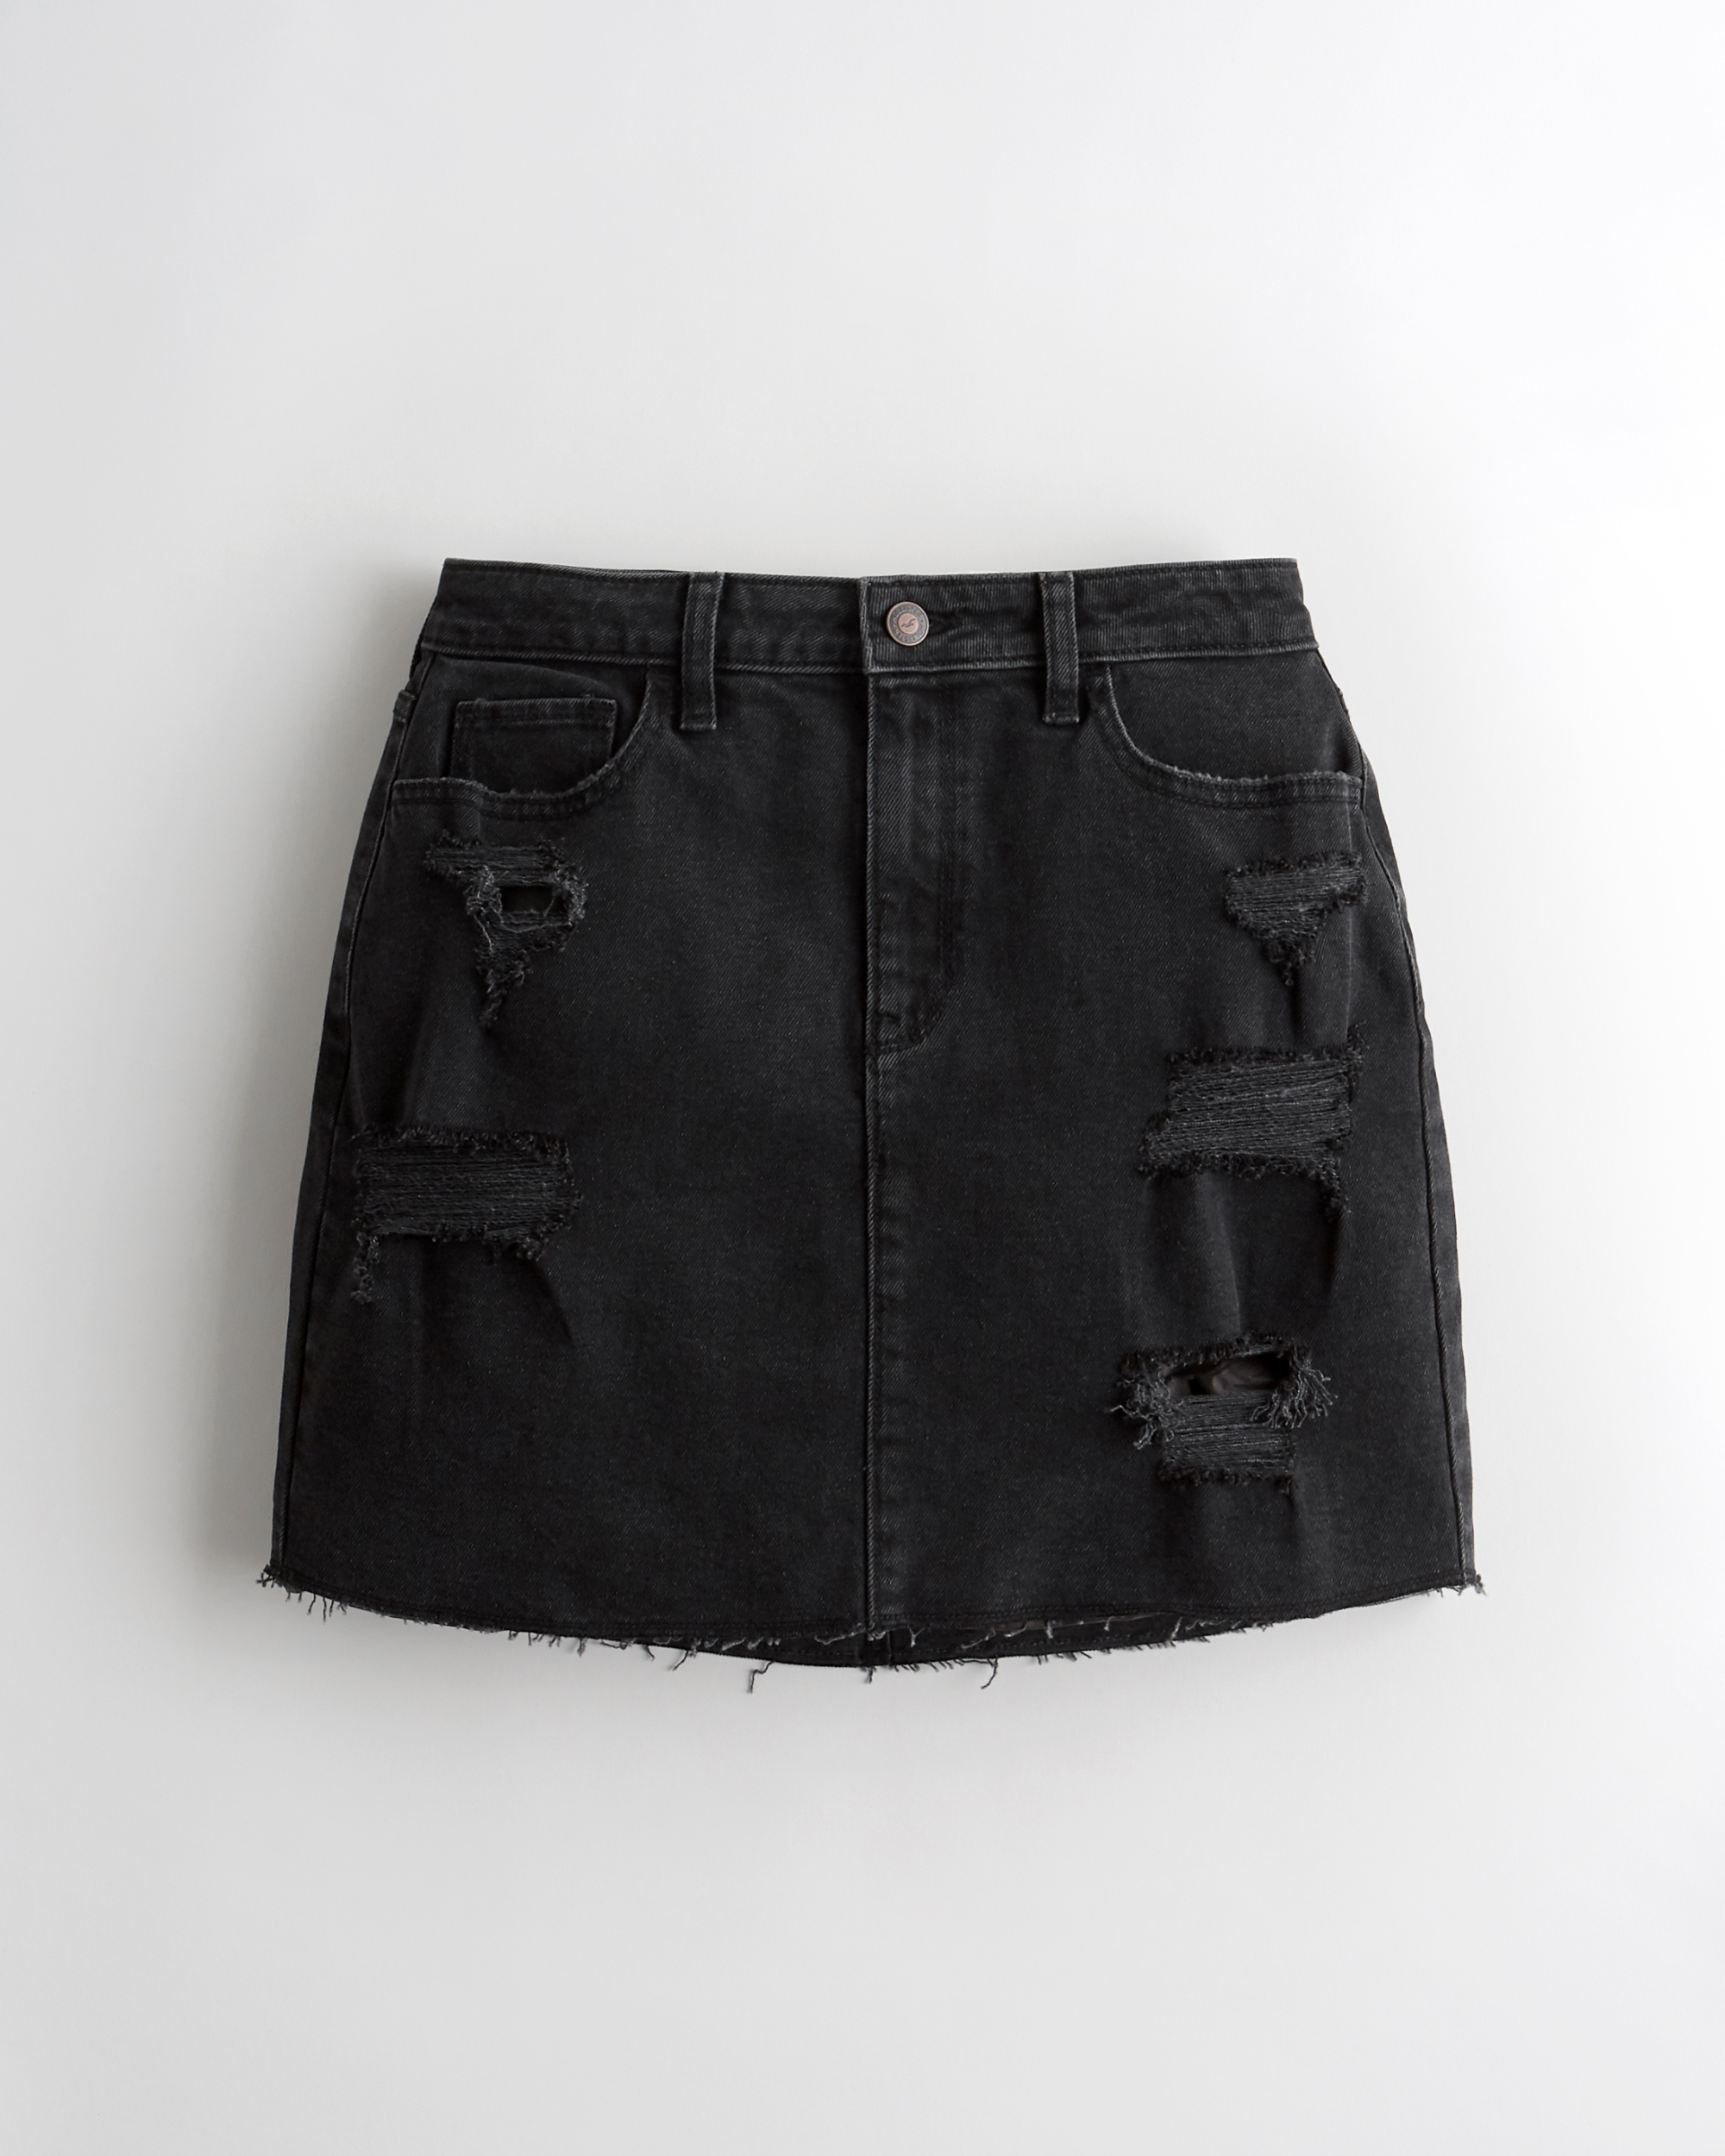 hollister black jean skirt